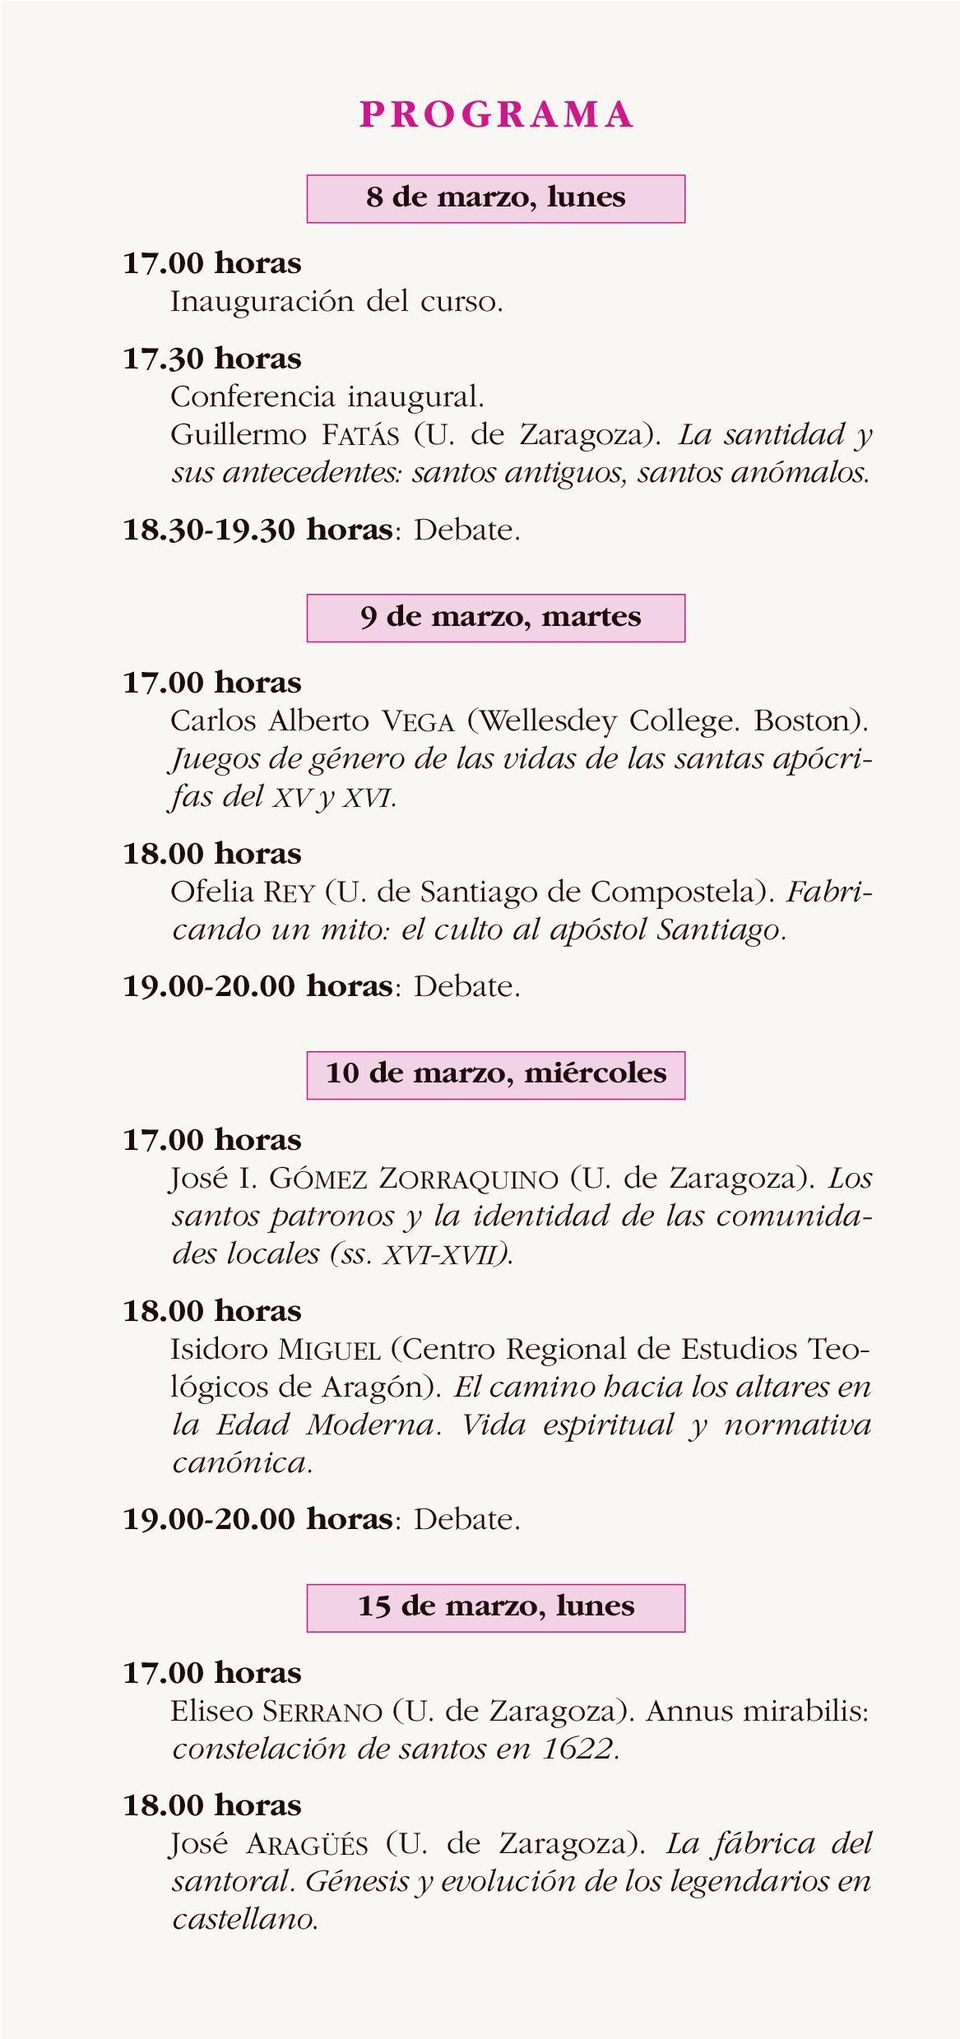 Fabricando un mito: el culto al apóstol Santiago. 19.00-20.00 horas: Debate. 10 de marzo, miércoles José I. GÓMEZ ZORRAQUINO (U. de Zaragoza).